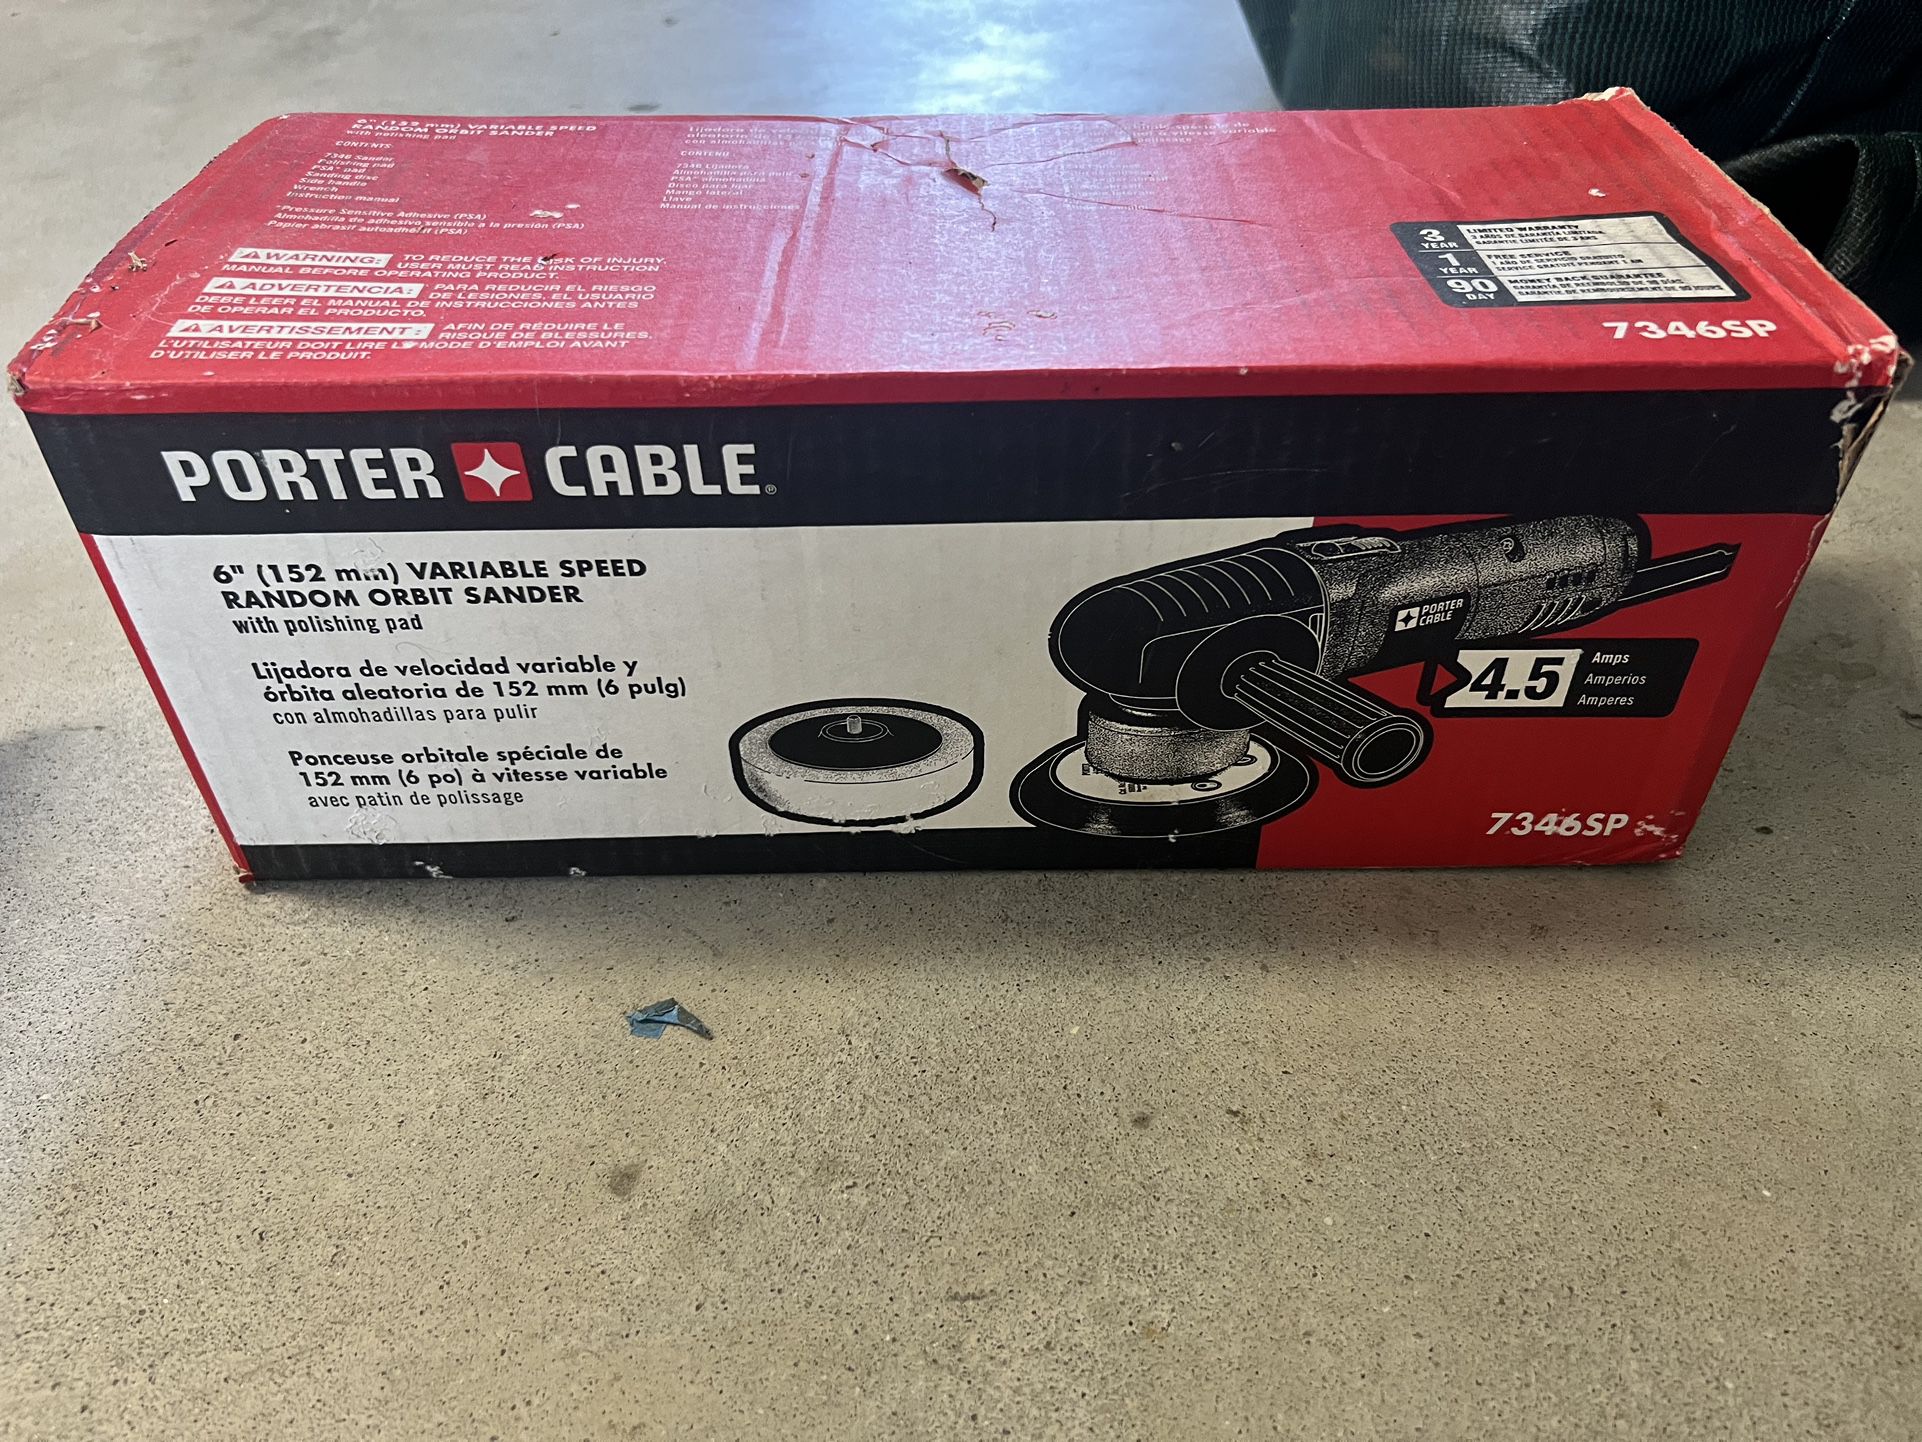 Porter Cable 6” Orbit Sander Model 7346SP